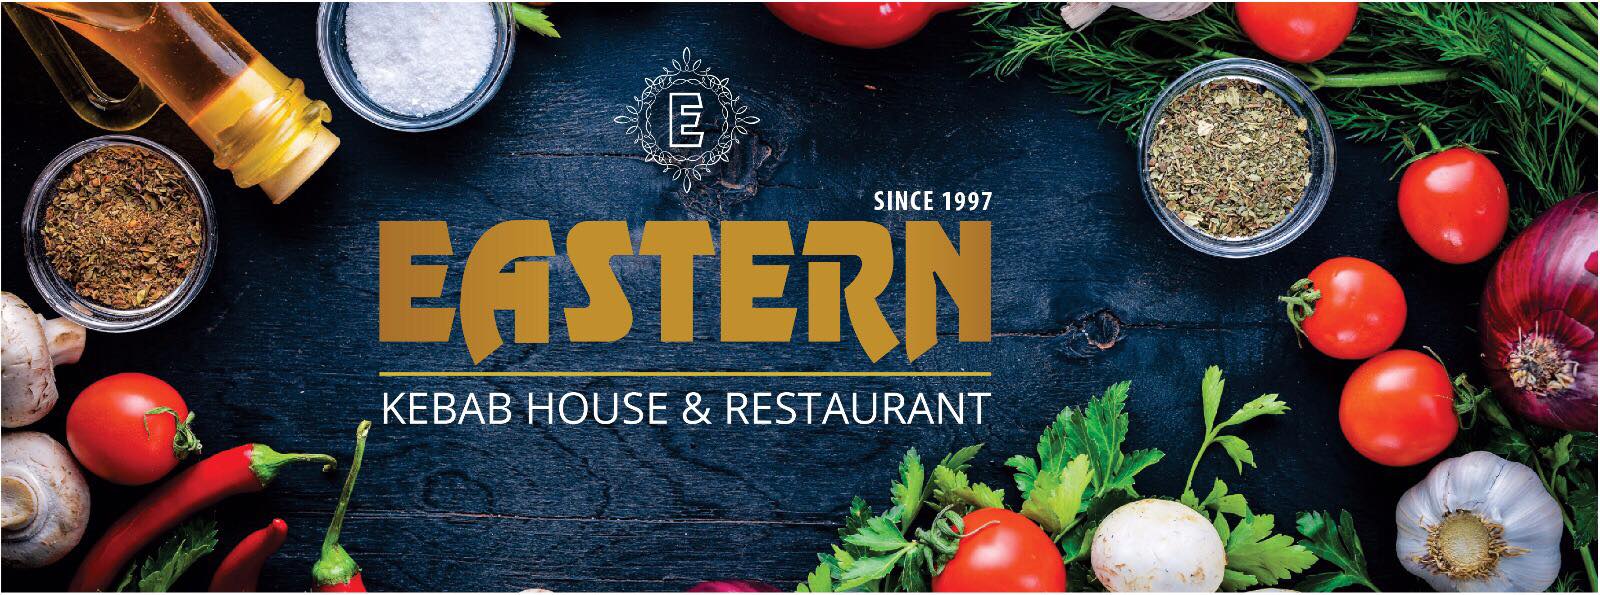 Eastern Restaurant & Takeaway